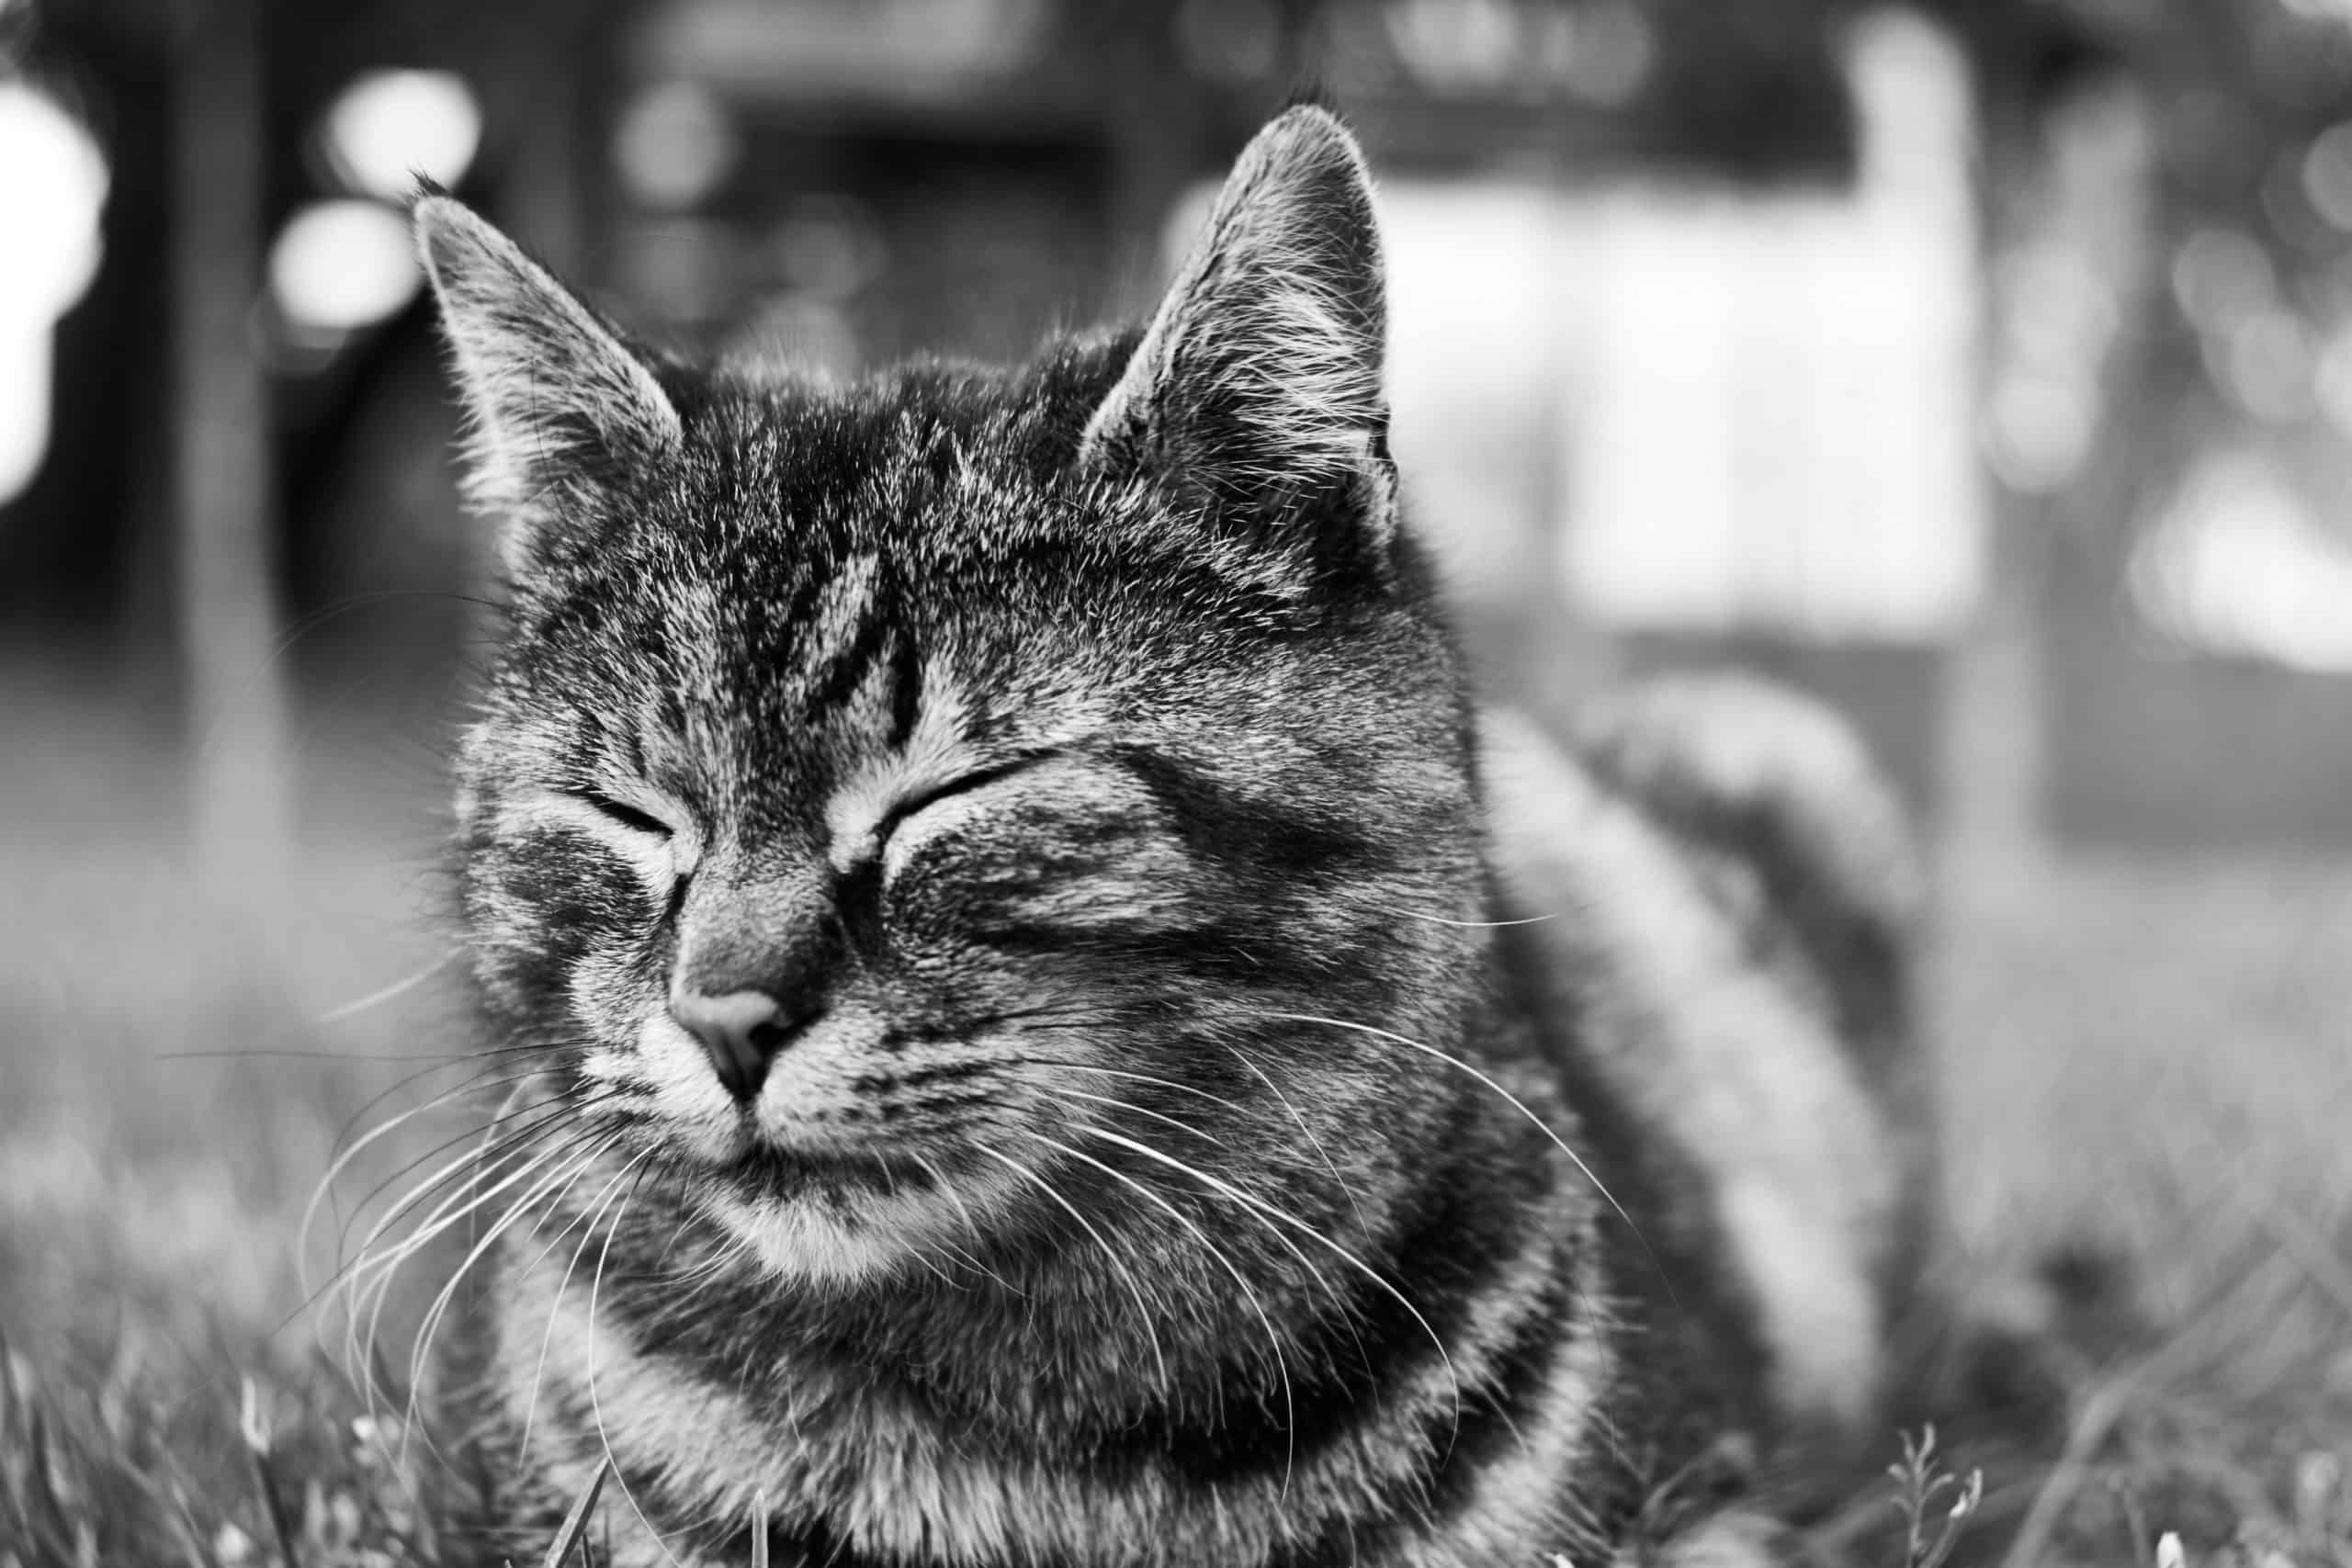 Cat Behaviors Explained: Staring And Blinking